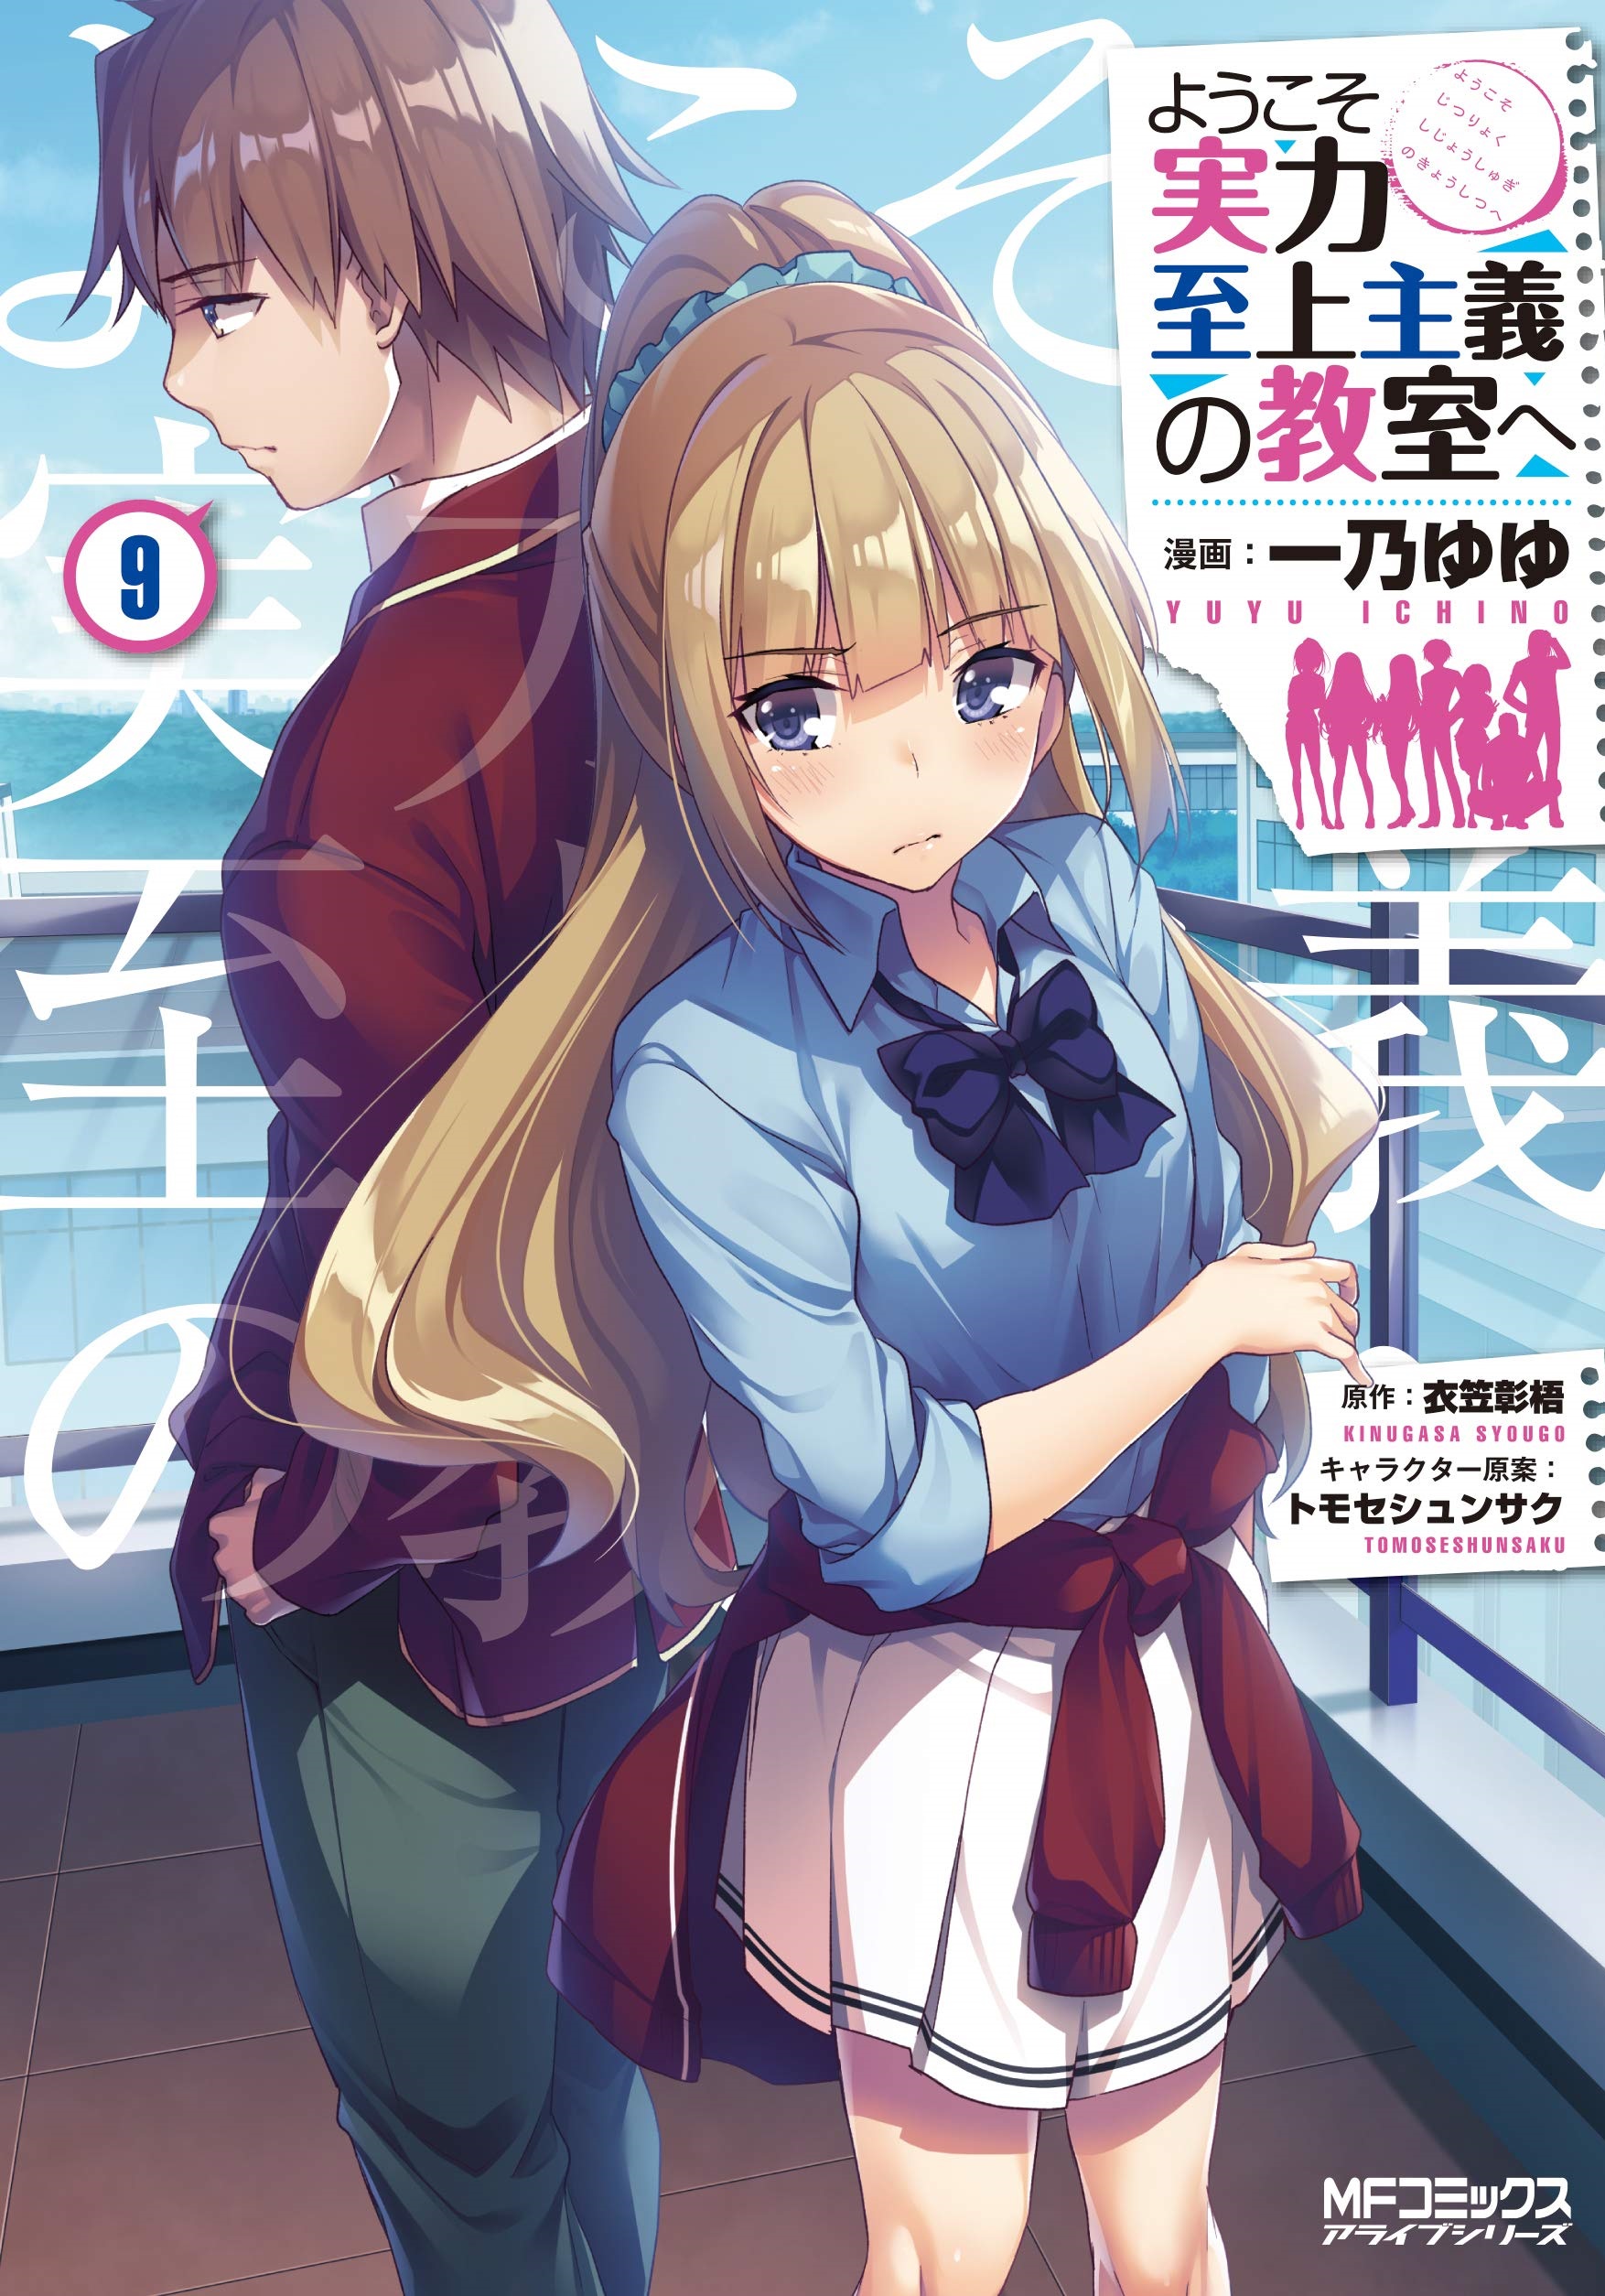 Youkoso Jitsuryoku Shijou Shugi No Kyoushitsu Light Novel Trinity